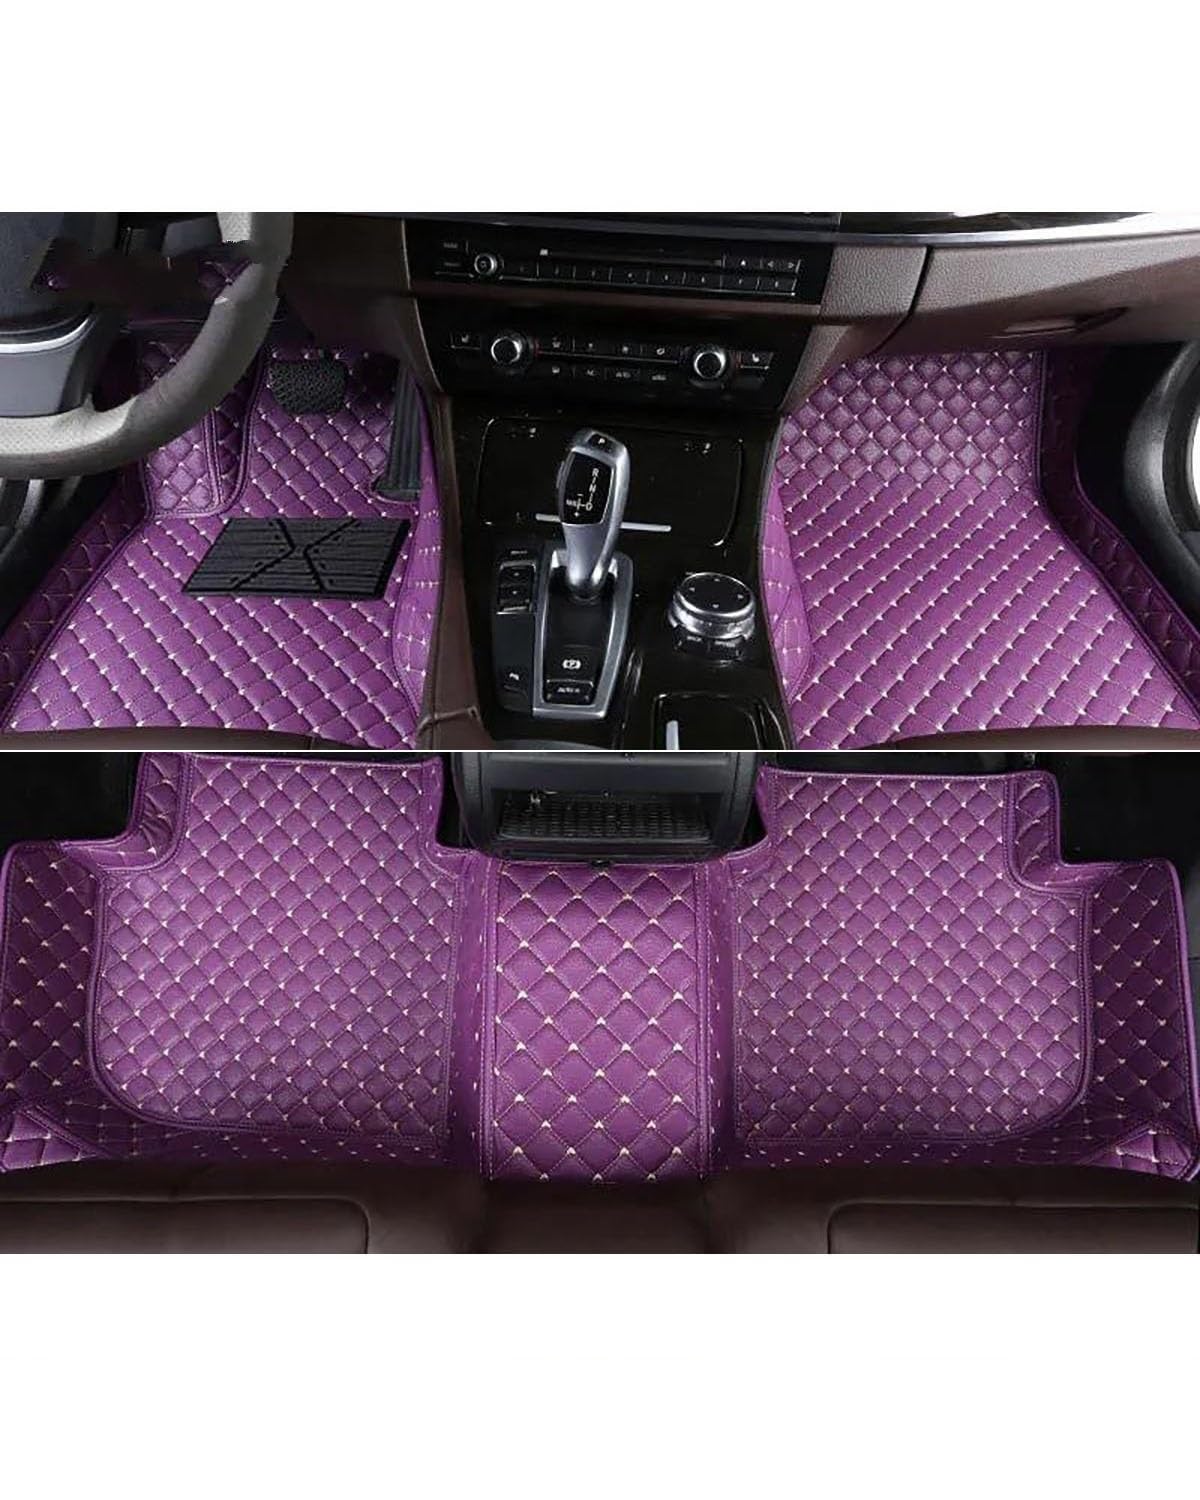 Auto Fussmatte Auto-Fußmatten Für BAIC Für BJ20 BJ40 S6 Senova D20 X25 X35 X55 X65 D80 D70 D50 Autoteppiche Fuß Coche Autoinnenausstattung Auto Fußmatten(Purple,for S6) von MYSSJS